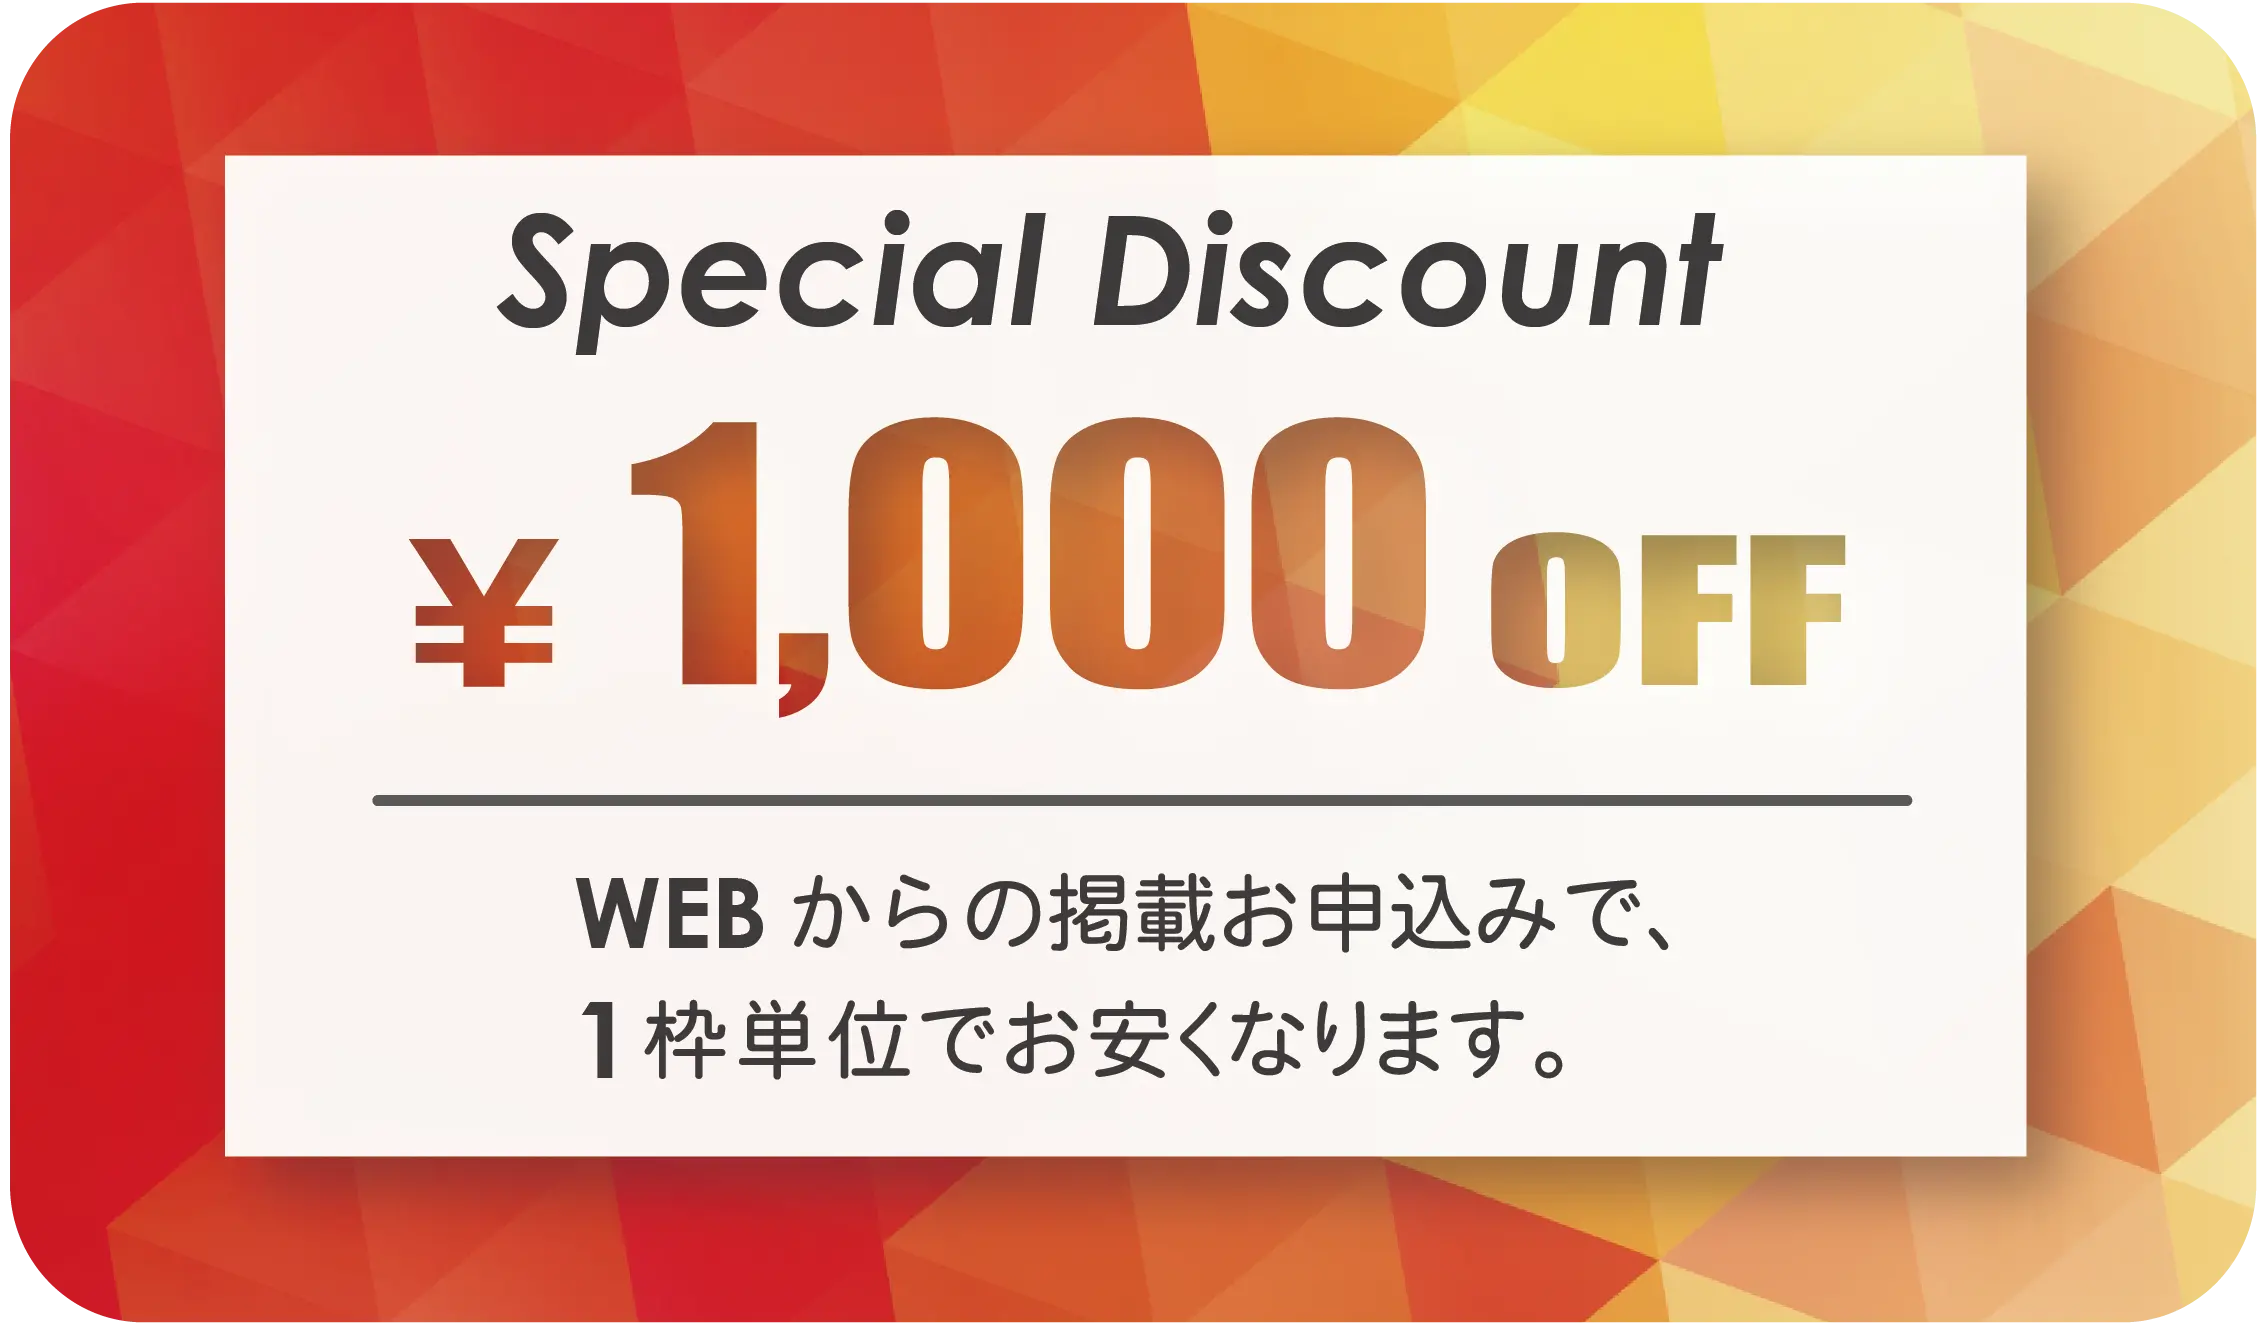 WEB割ディスカウントクーポン。webからのお申込みで1000円引き